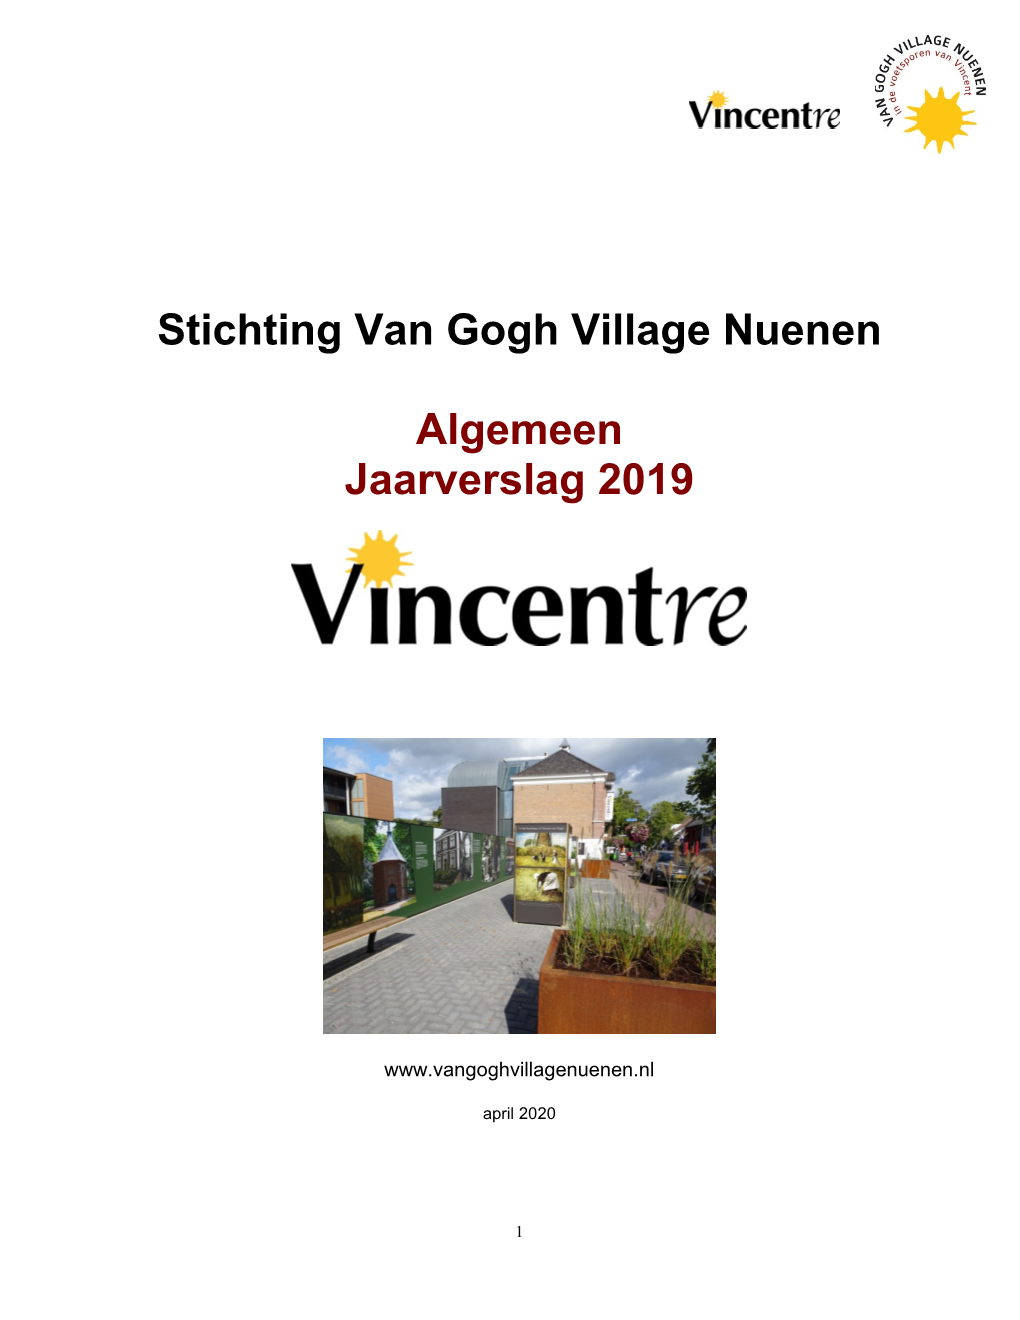 Stichting Van Gogh Village Nuenen Algemeen Jaarverslag 2019